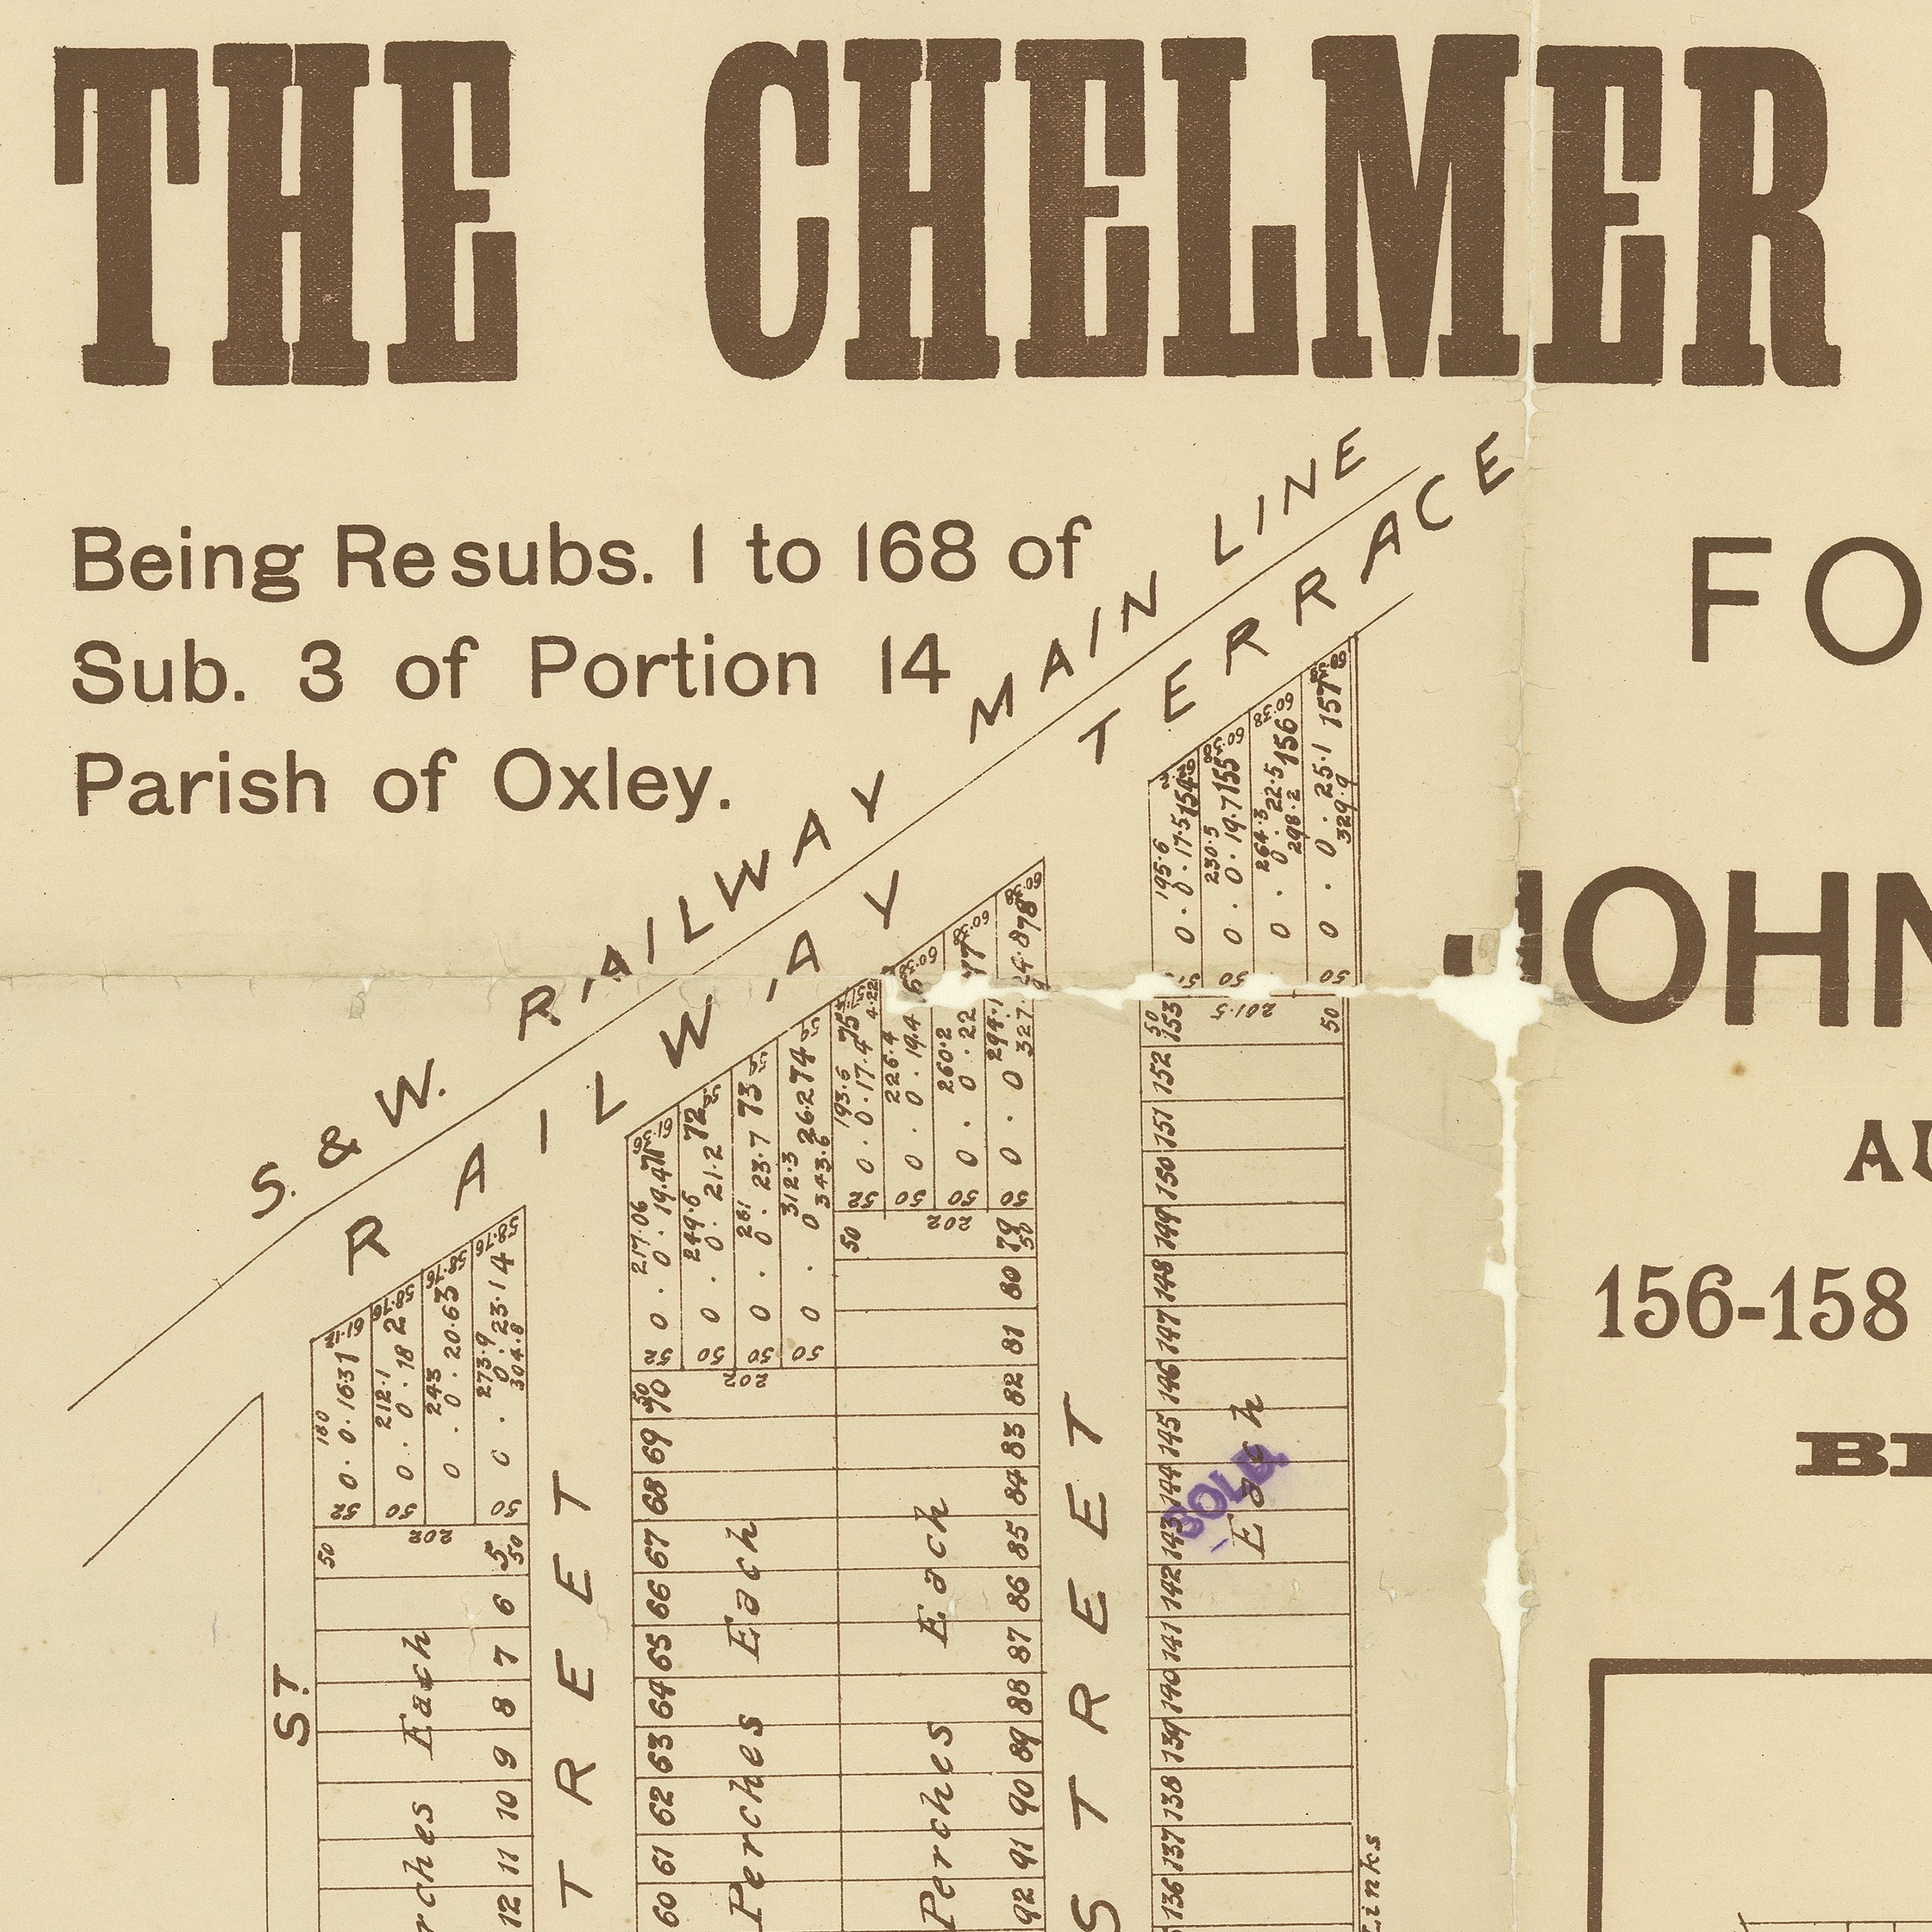 1901 Chelmer - The Chelmer Estate